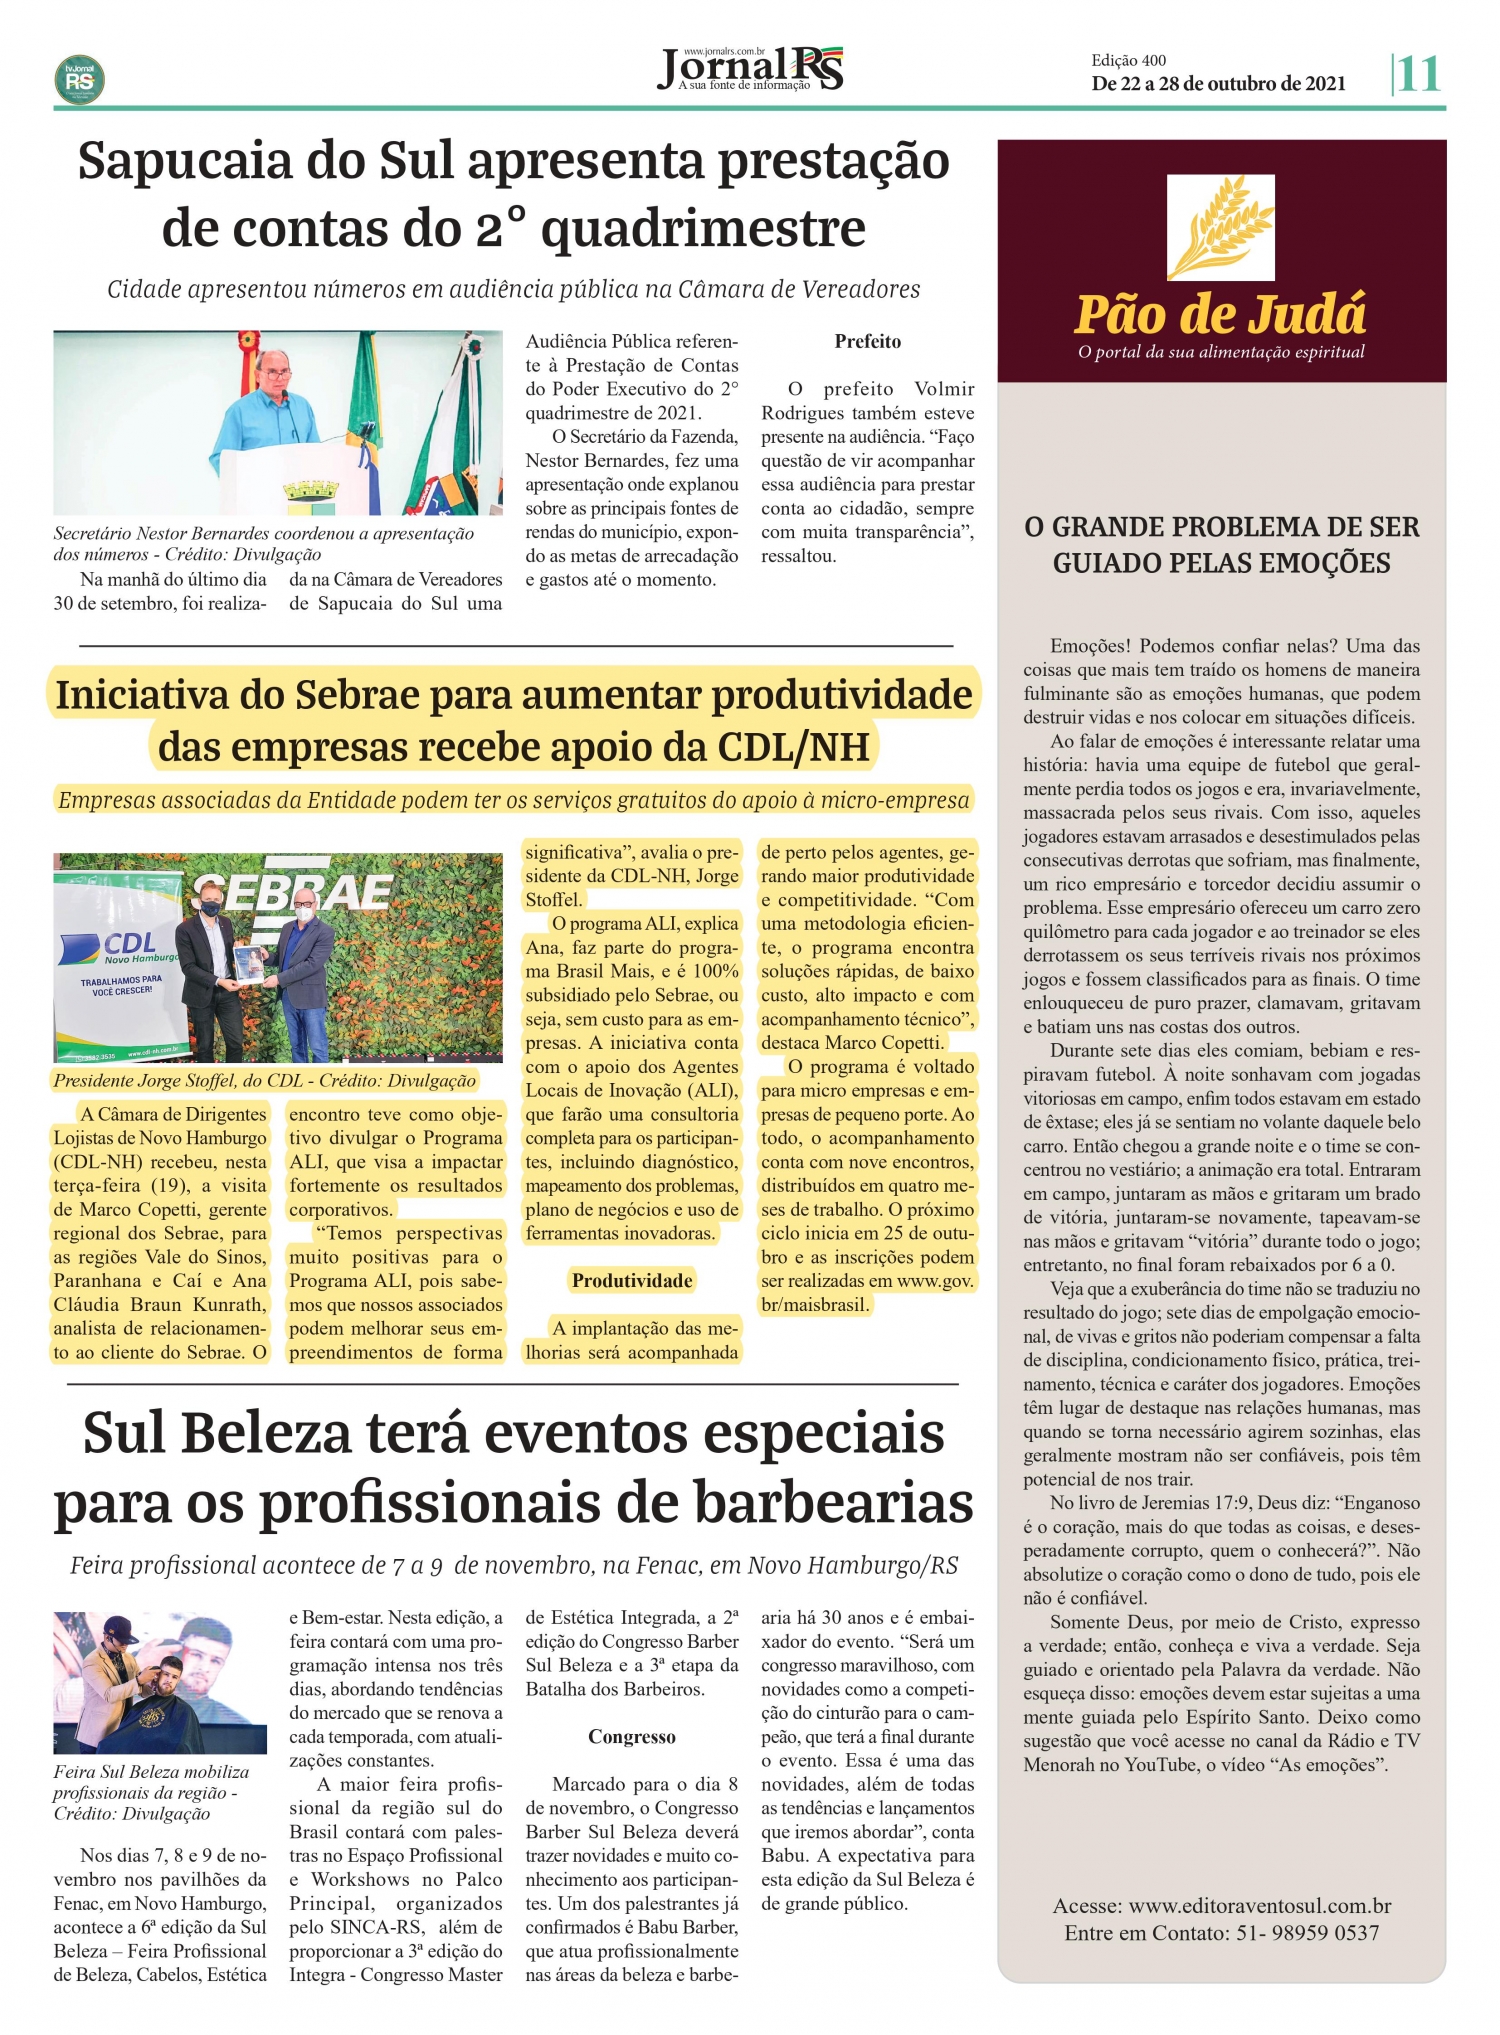 CDL NH e Sebrae firmam parceria, confira noticia em jornal da região!